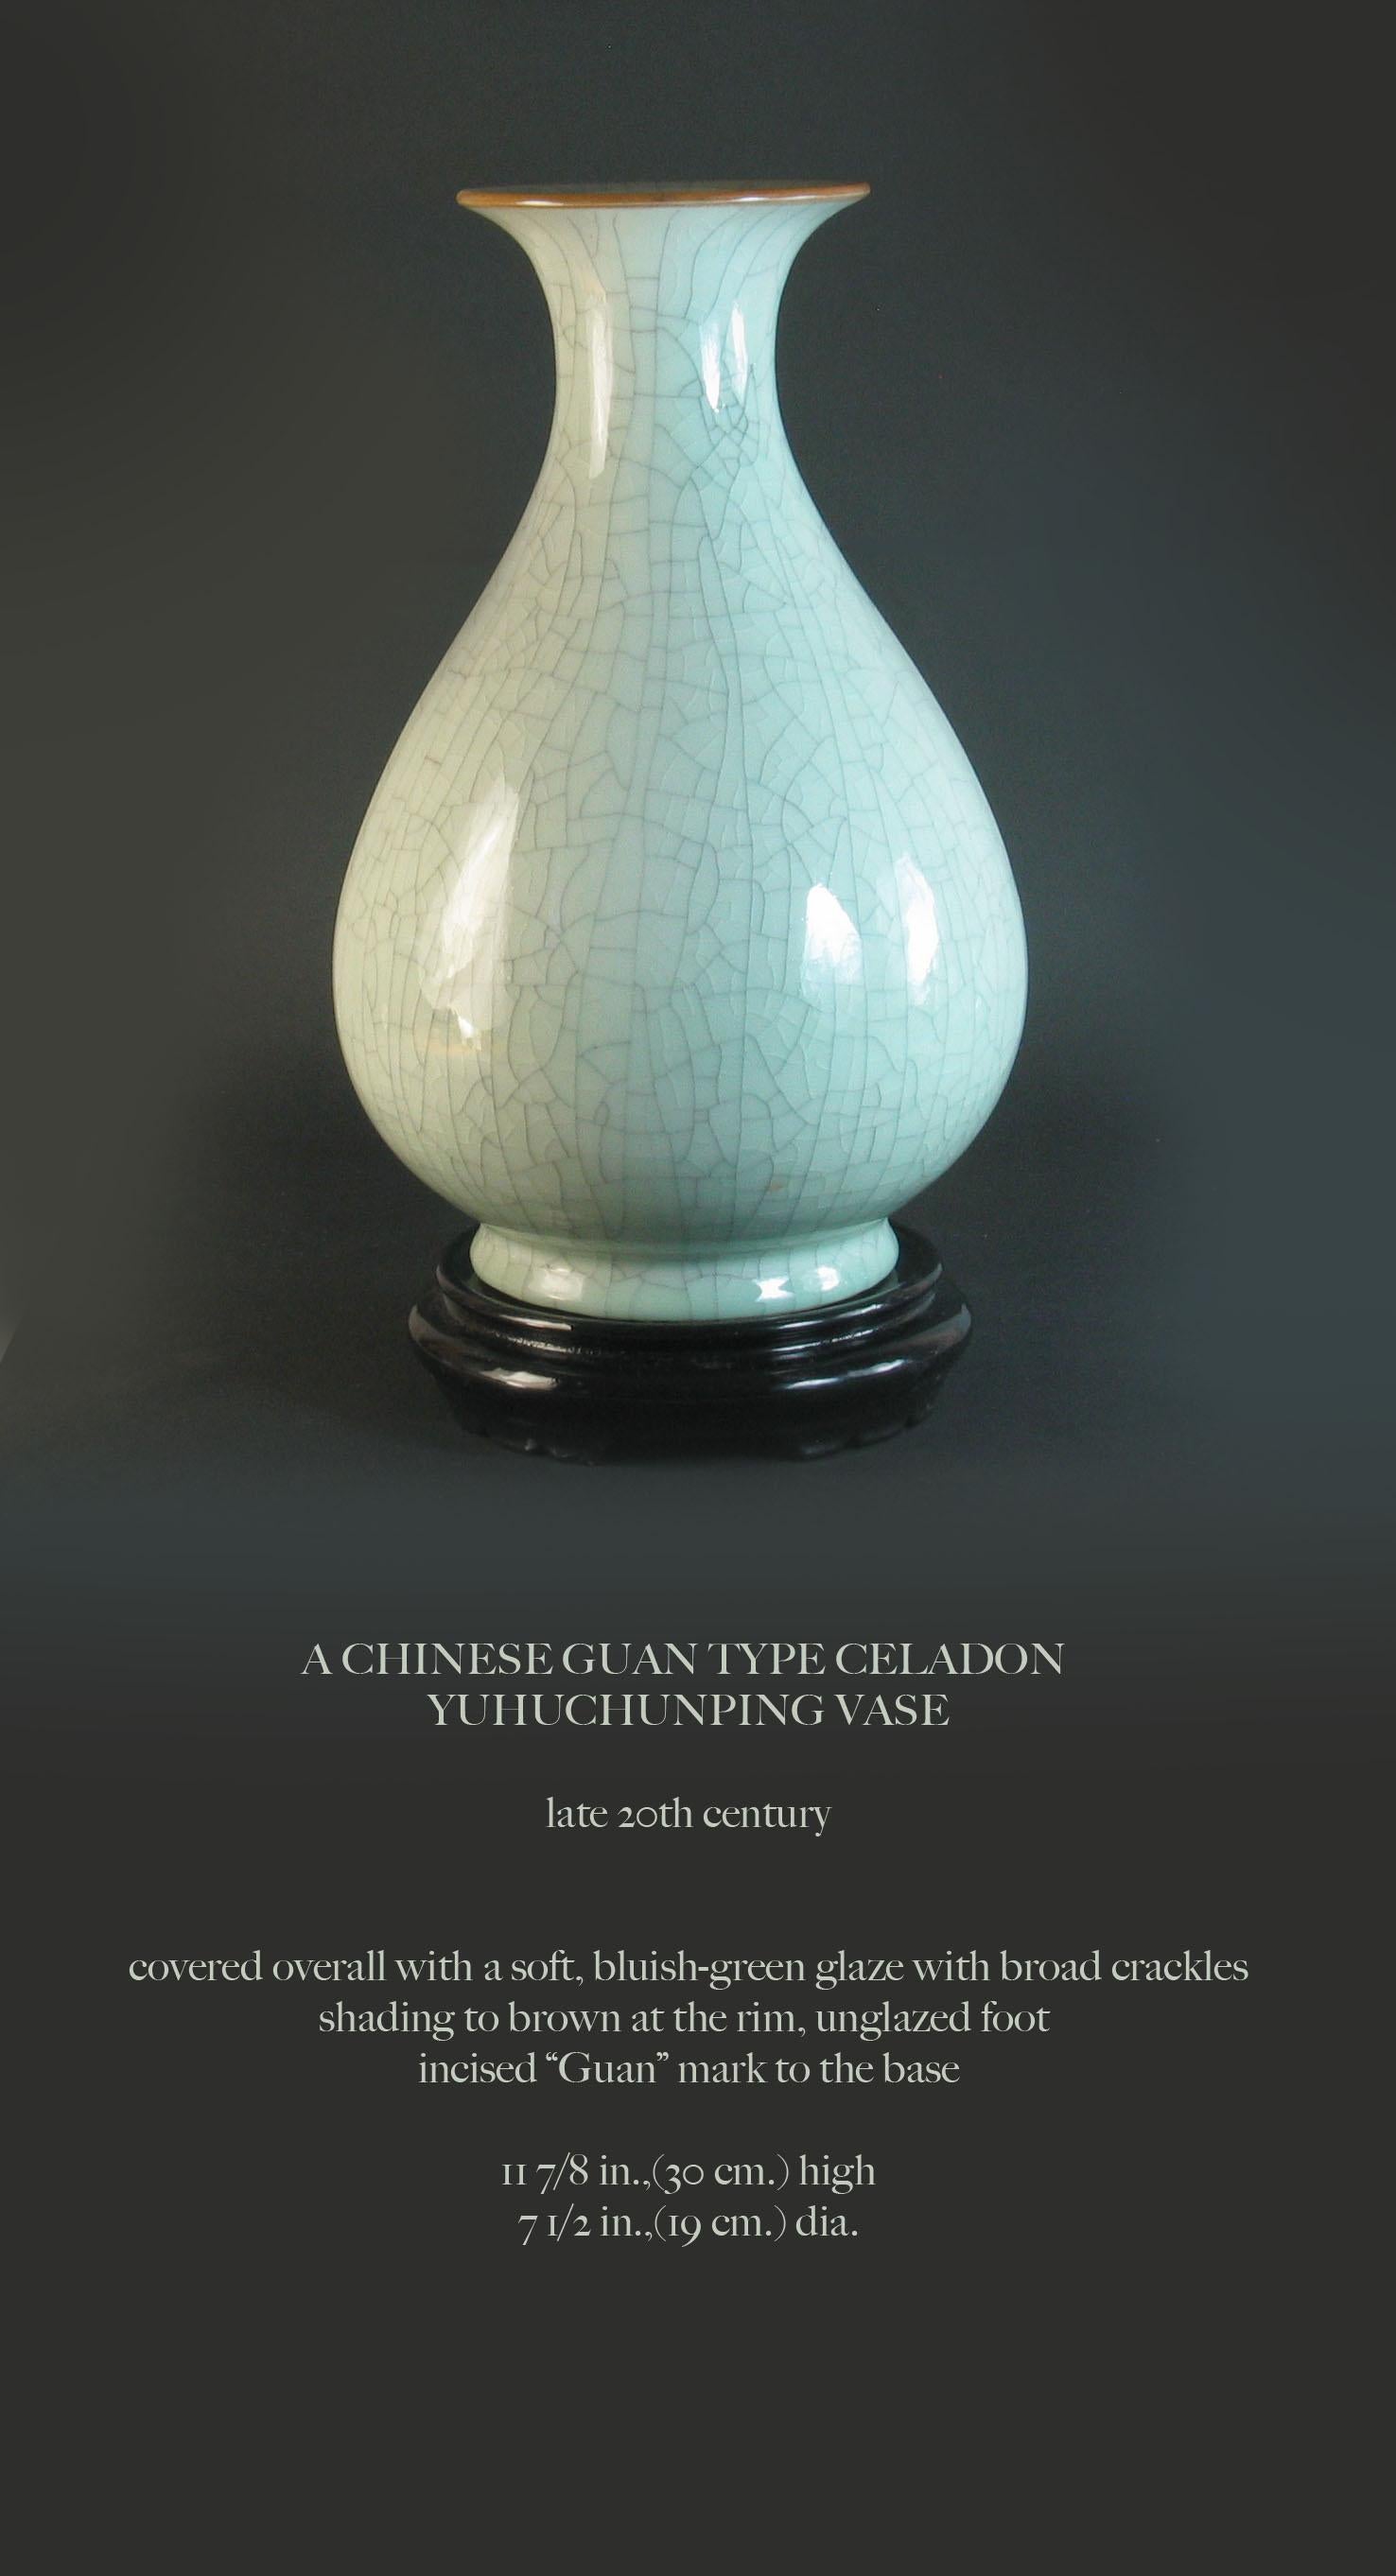 Chinesischer Guan-Typ-Celadon
Yuhuchunping-Vase,

Ende des 20. Jahrhunderts.


Insgesamt mit einer weichen, bläulich-grünen Glasur mit breiten Craquelés überzogen,
am Rand ins Braune übergehend, unglasierter Fuß 
eingeschnittene Marke 